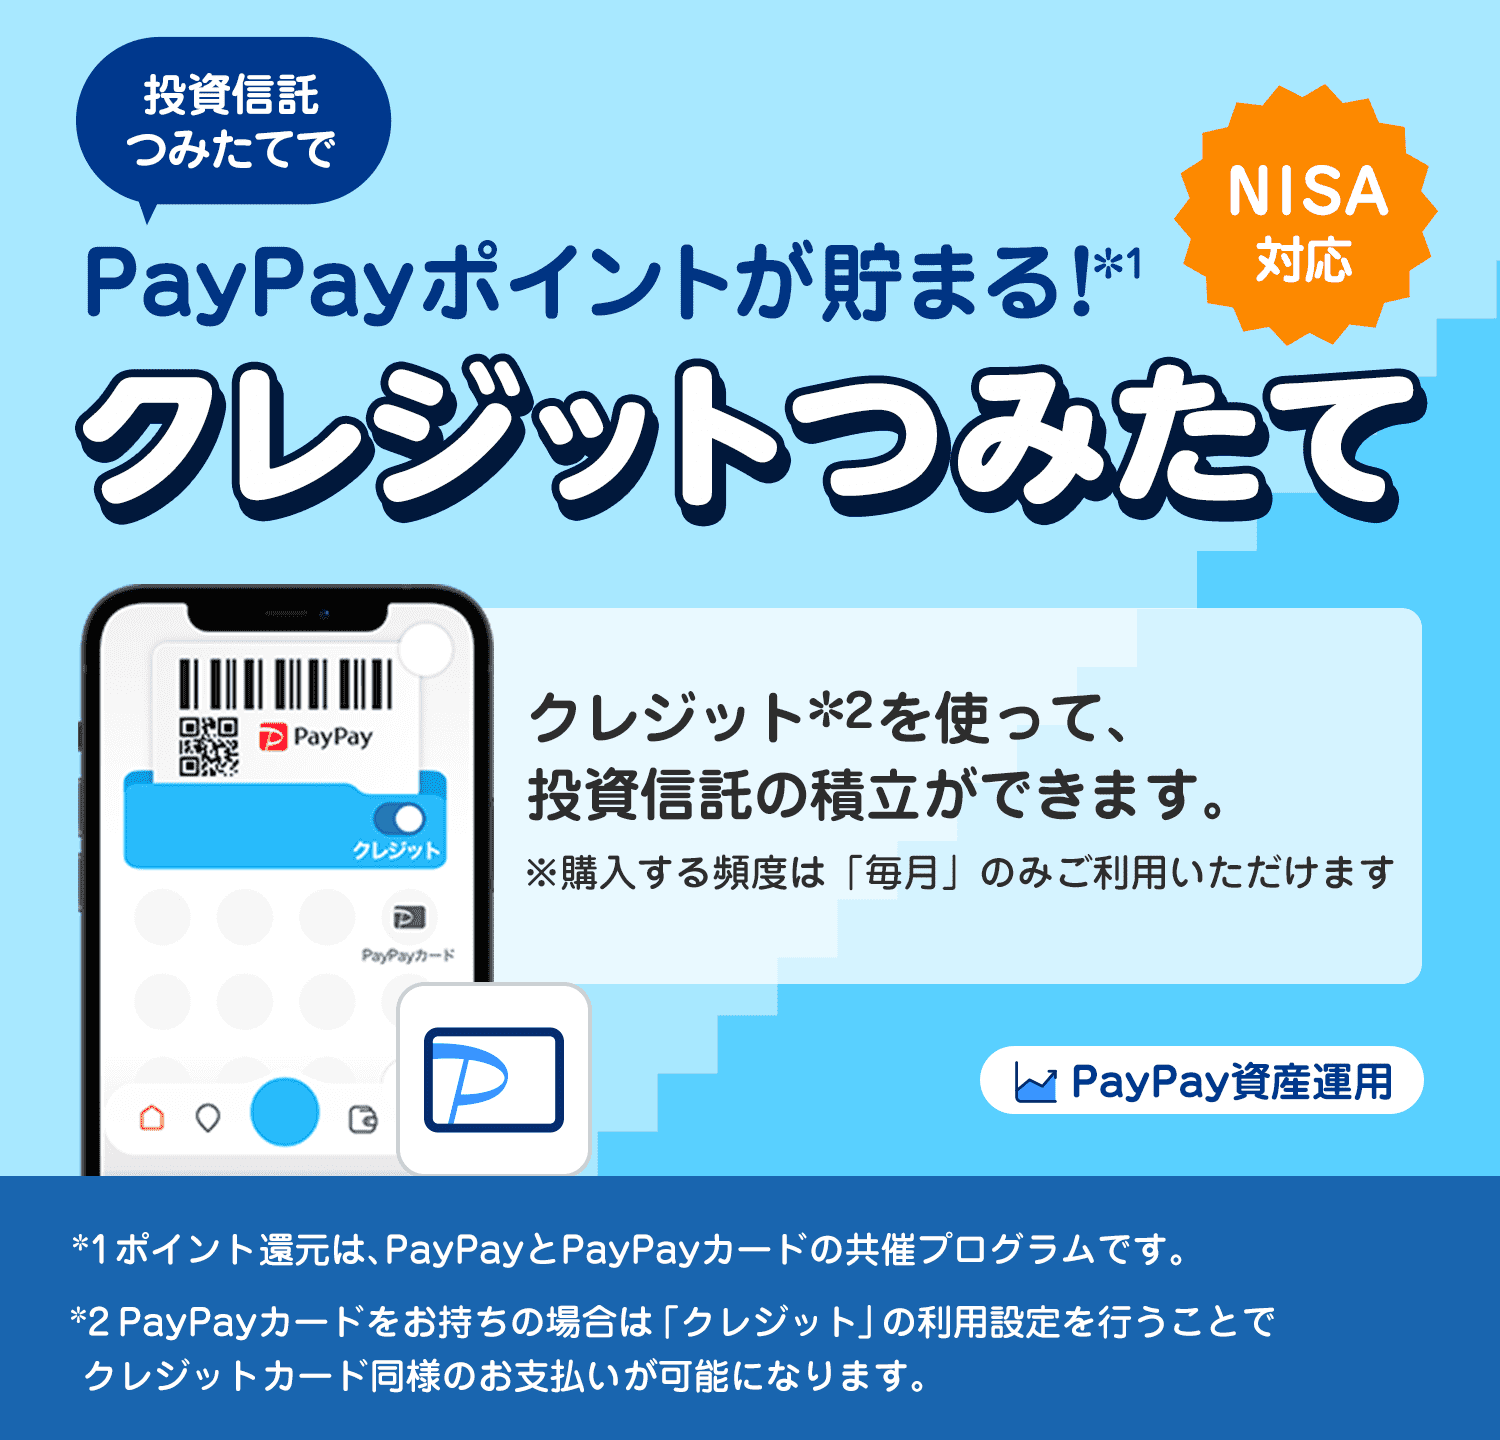 PayPay資産運用 投資信託つみたてでPayPayポイントが貯まる！＊1 クレジットつみたて NISA対応 クレジット＊2を使って、投資信託の積立ができます。 ※購入する頻度は「毎月」のみご利用いただけます ＊1ポイント還元は、PayPayとPayPayカードの共催プログラムです。＊2PayPayカードをお持ちの場合は「クレジット」の利用設定を行うことでクレジットカード同様のお支払いが可能になります。